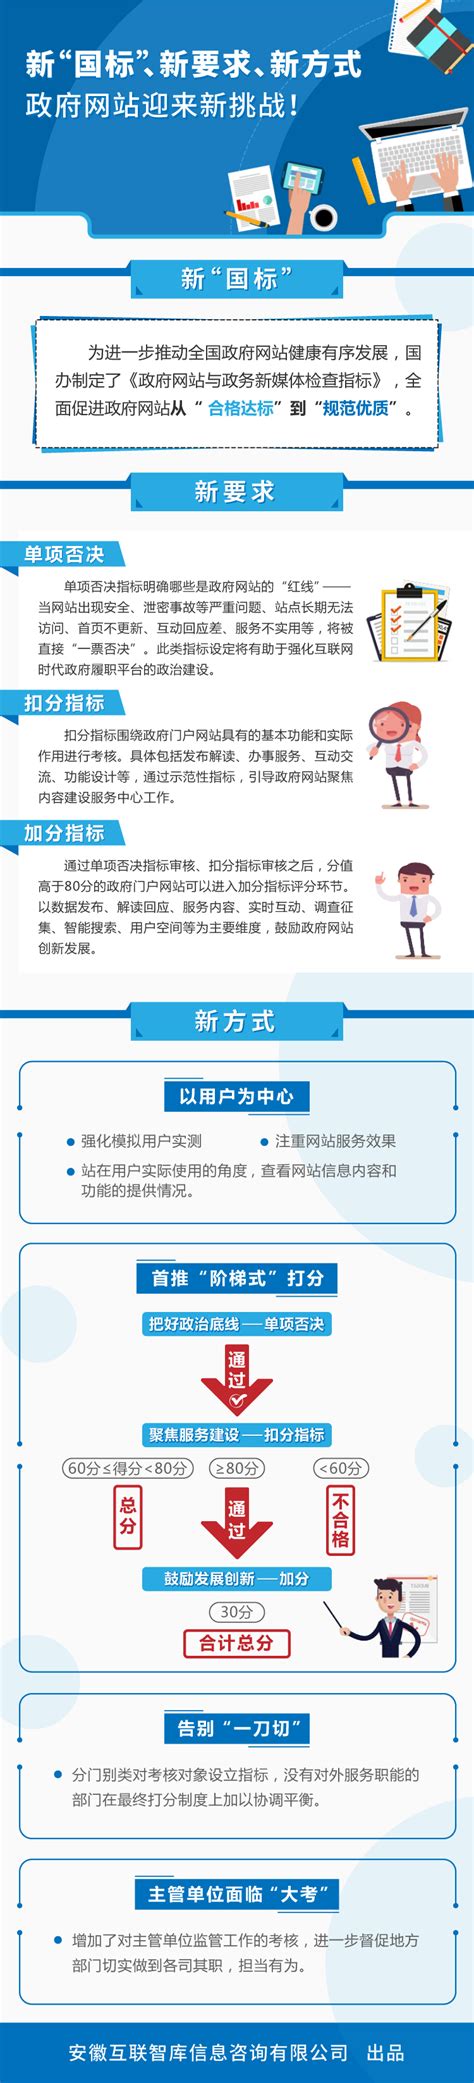 安徽清新互联信息科技有限公司 - 安徽产业网